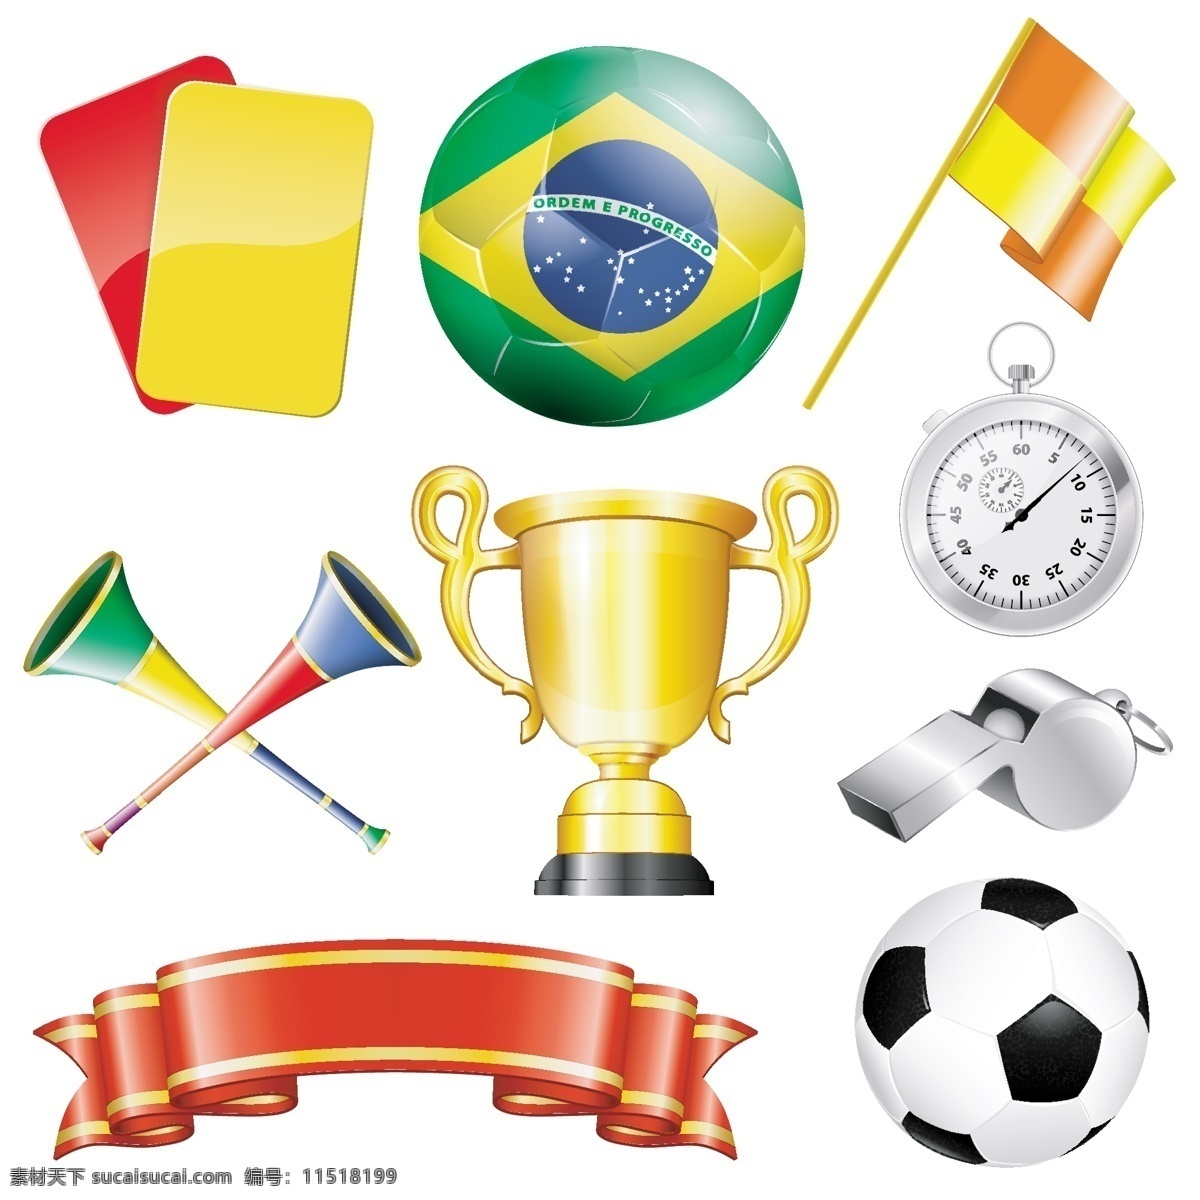 巴西 奖杯 秒表 欧洲杯 世界杯 丝带 体育 体育运动 文化艺术 足球矢量素材 足球模板下载 足球 足球比赛 足球设计 体育设计 足球海报 足球运动 体育比赛 矢量 企业文化海报